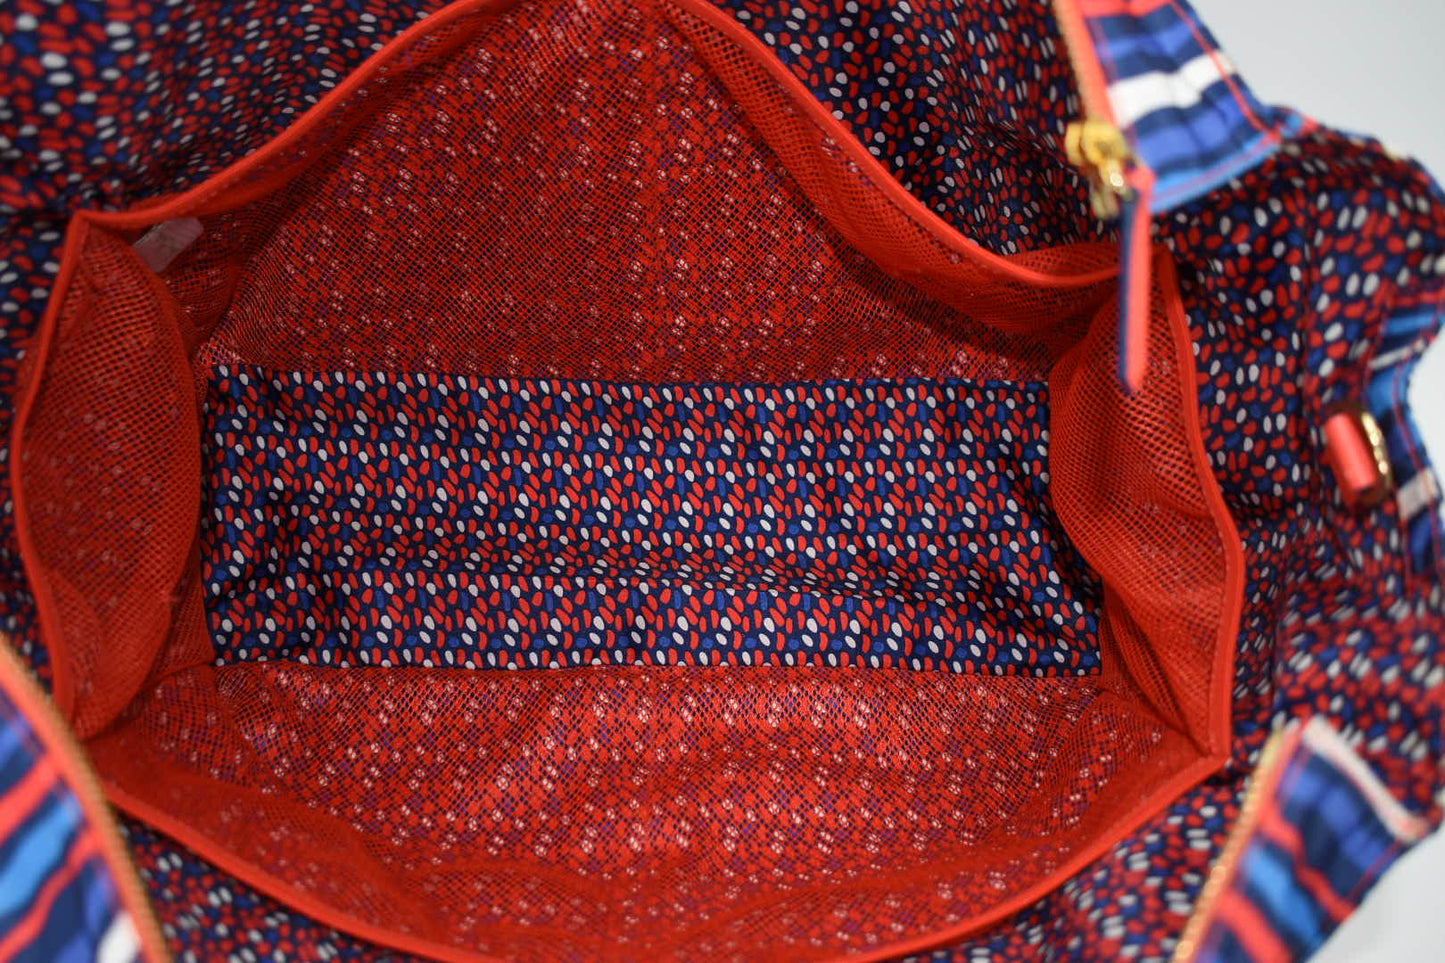 Vera Bradley Preppy Poly Large Tote Bag in "Cobalt Stripe" Pattern